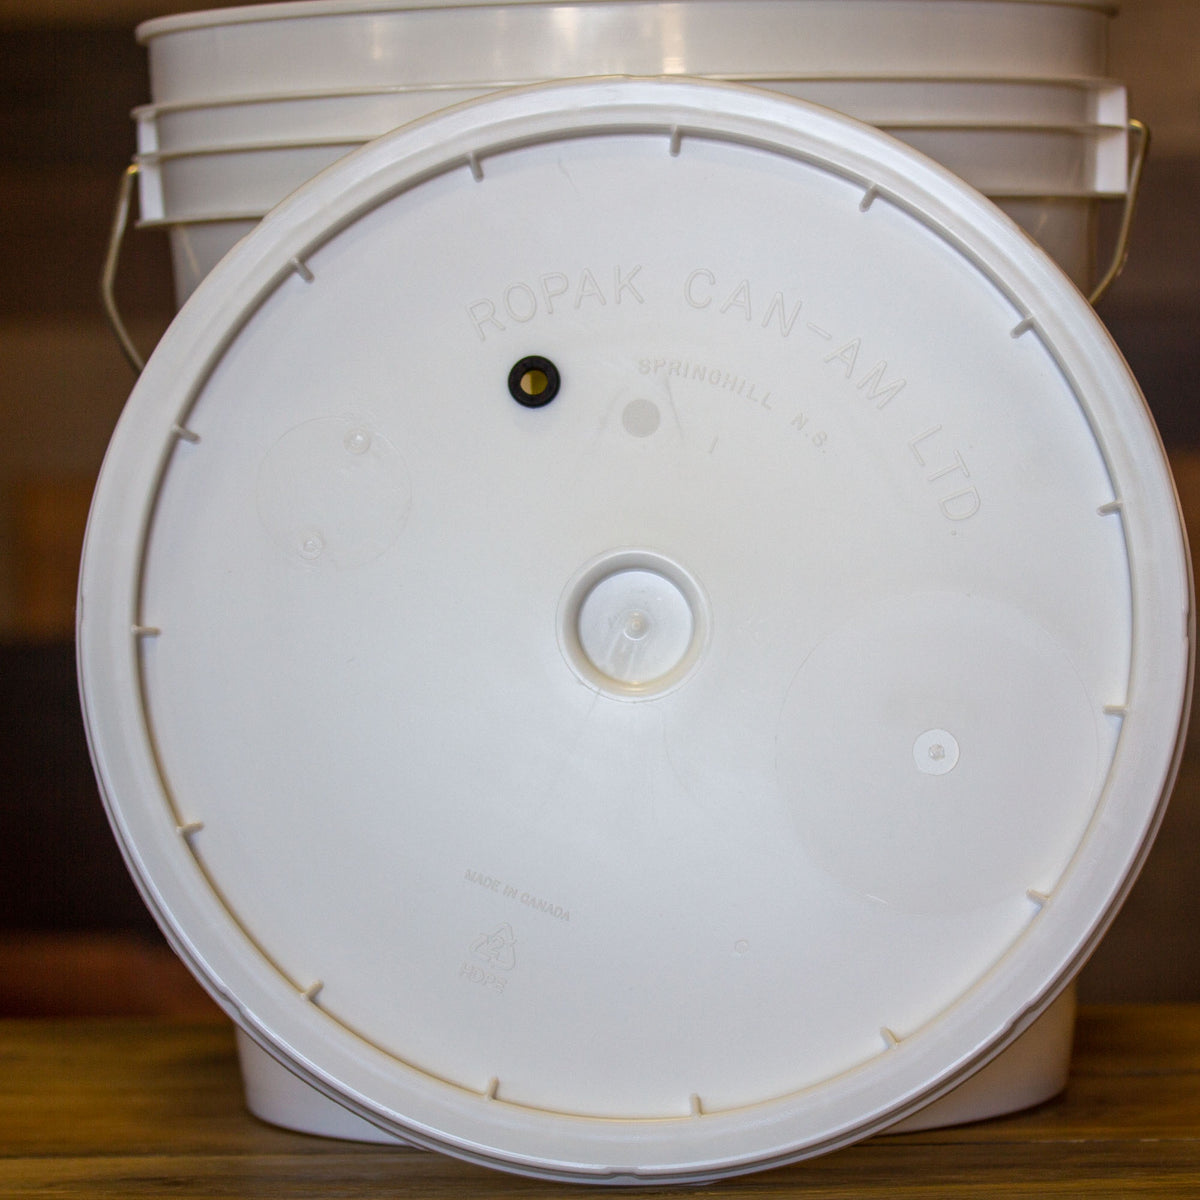 LID - 7.9 Gallon Fermenting Bucket w/Grommet